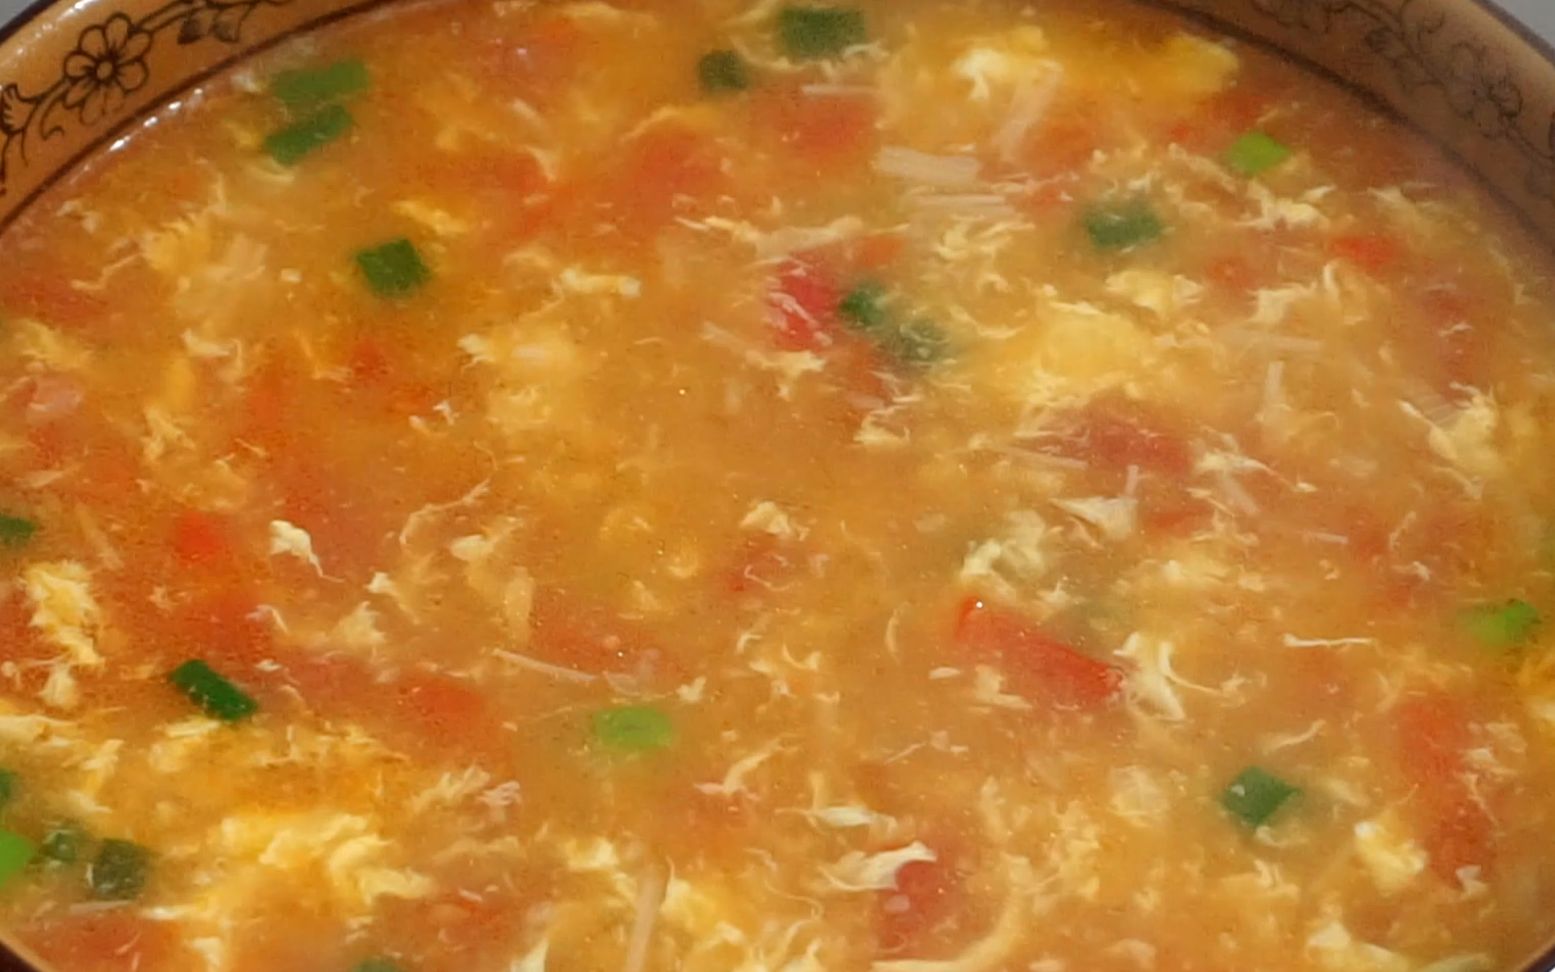 米其林大厨的南瓜汤的做法大全_米其林大厨的南瓜汤的家常做法 - 心食神